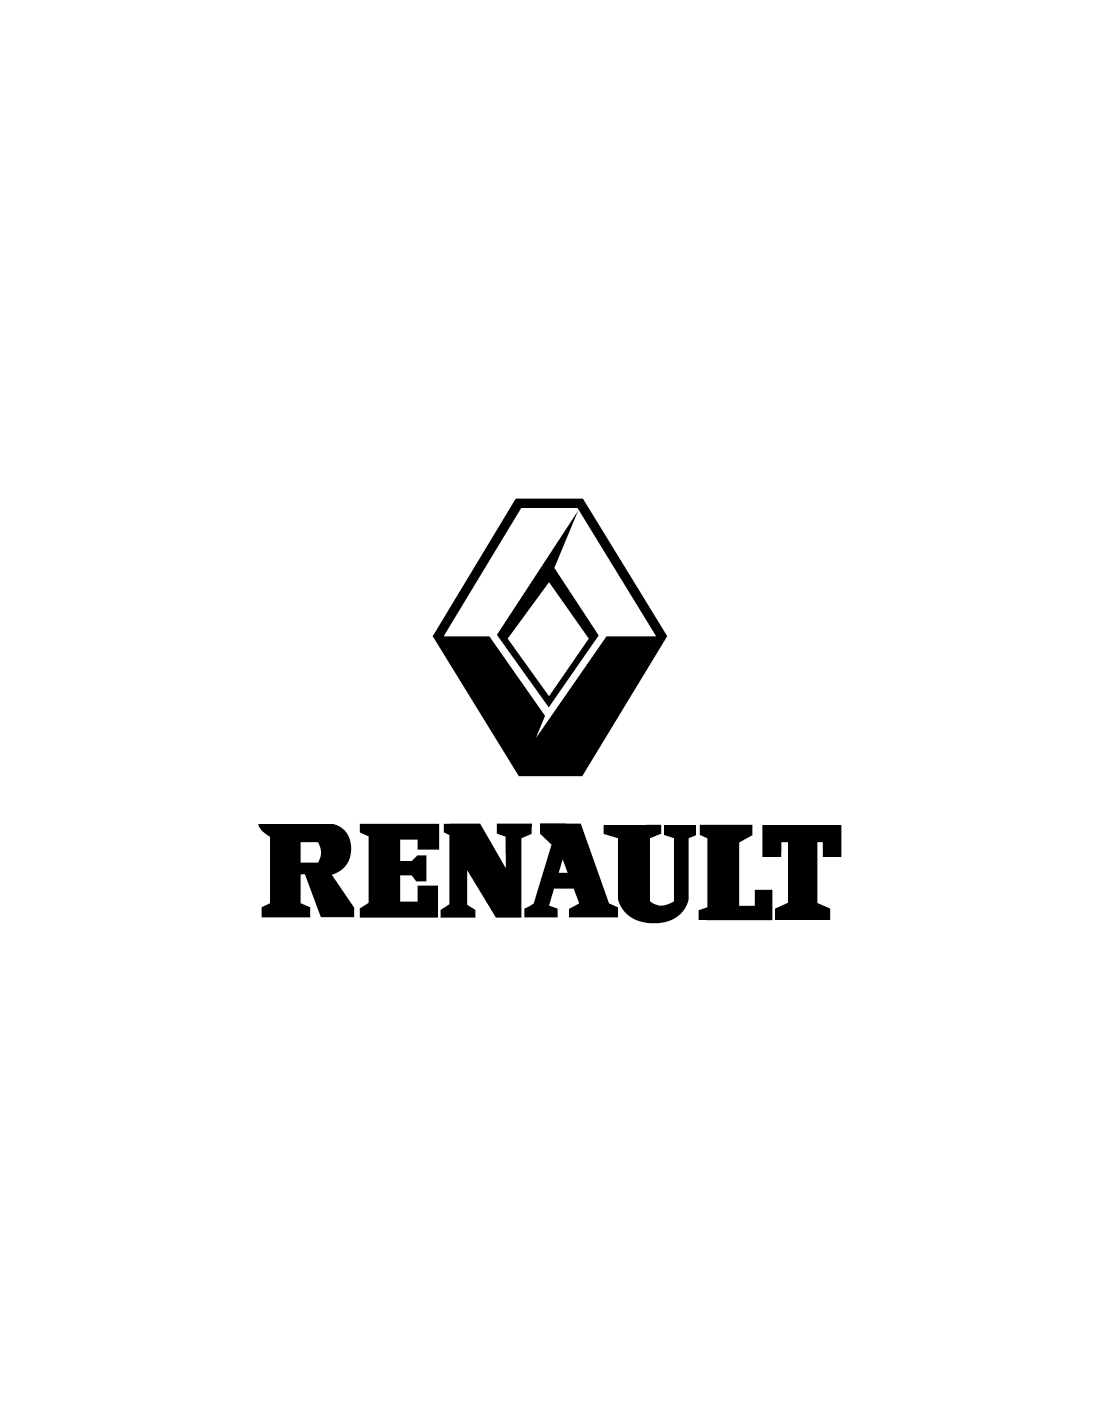 Logo Renault - Adesivo Prespaziato - AdesiviStore